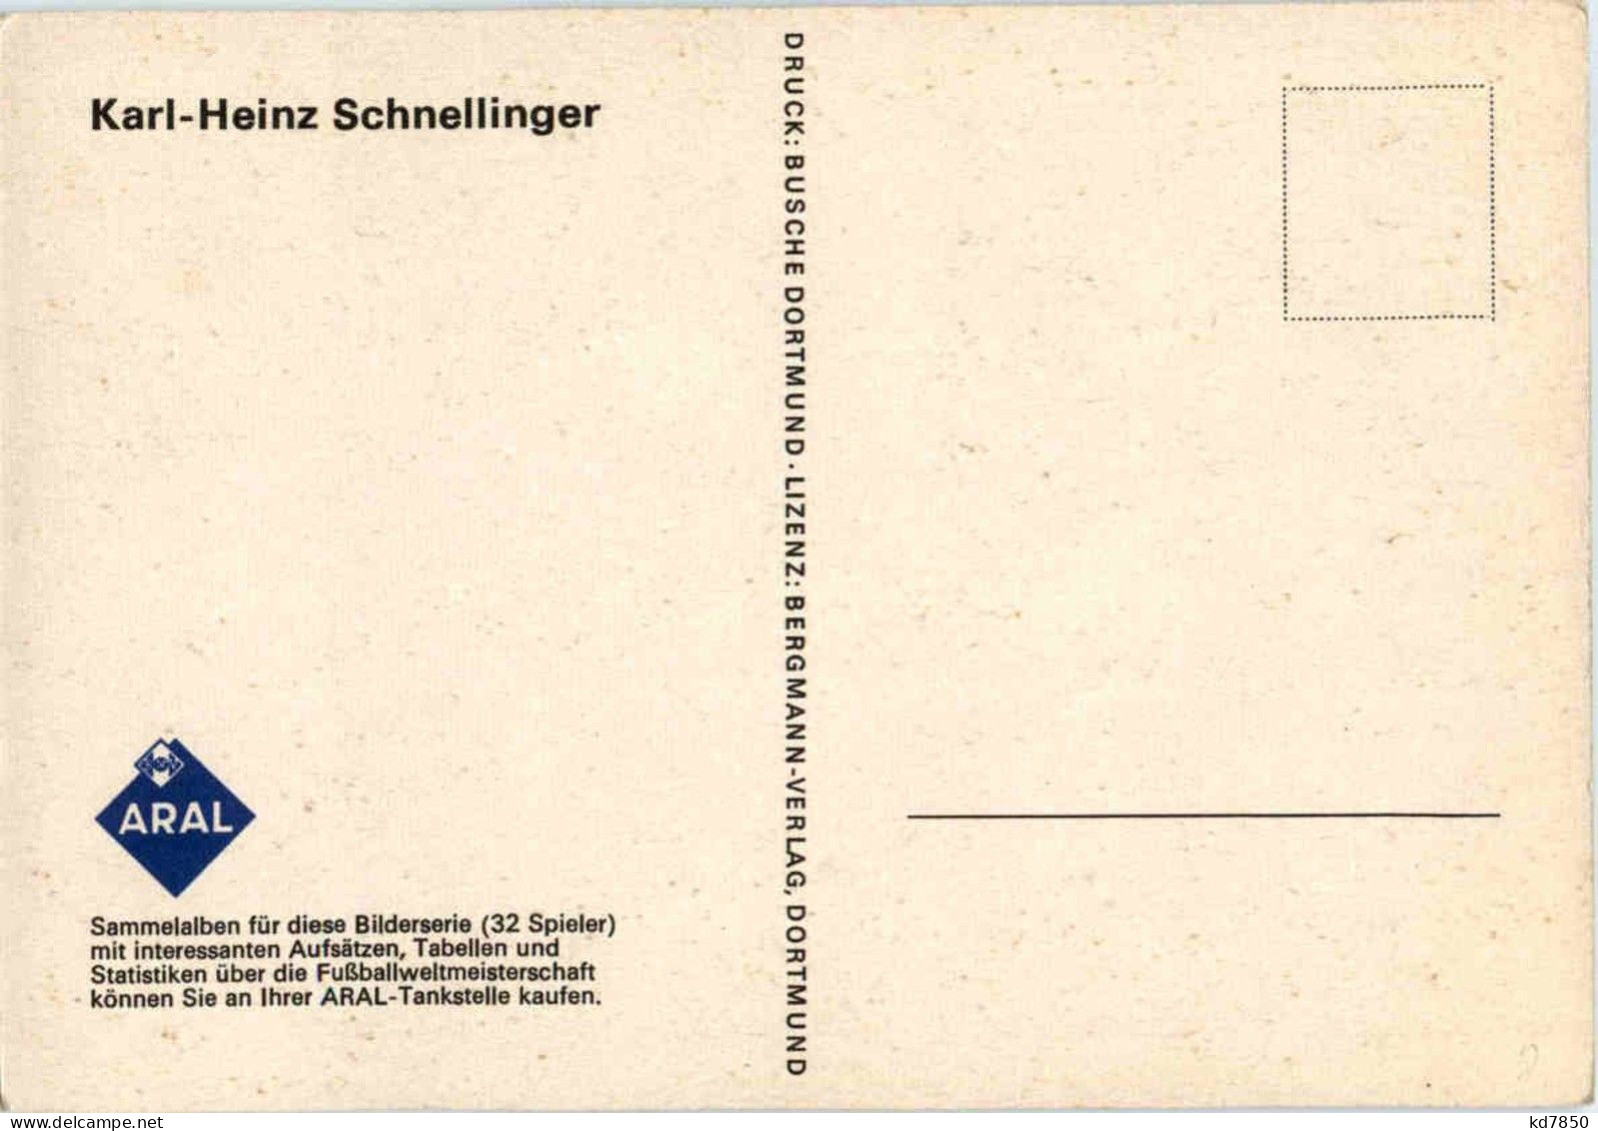 Karl - Heinz Schnellinger - Fussball